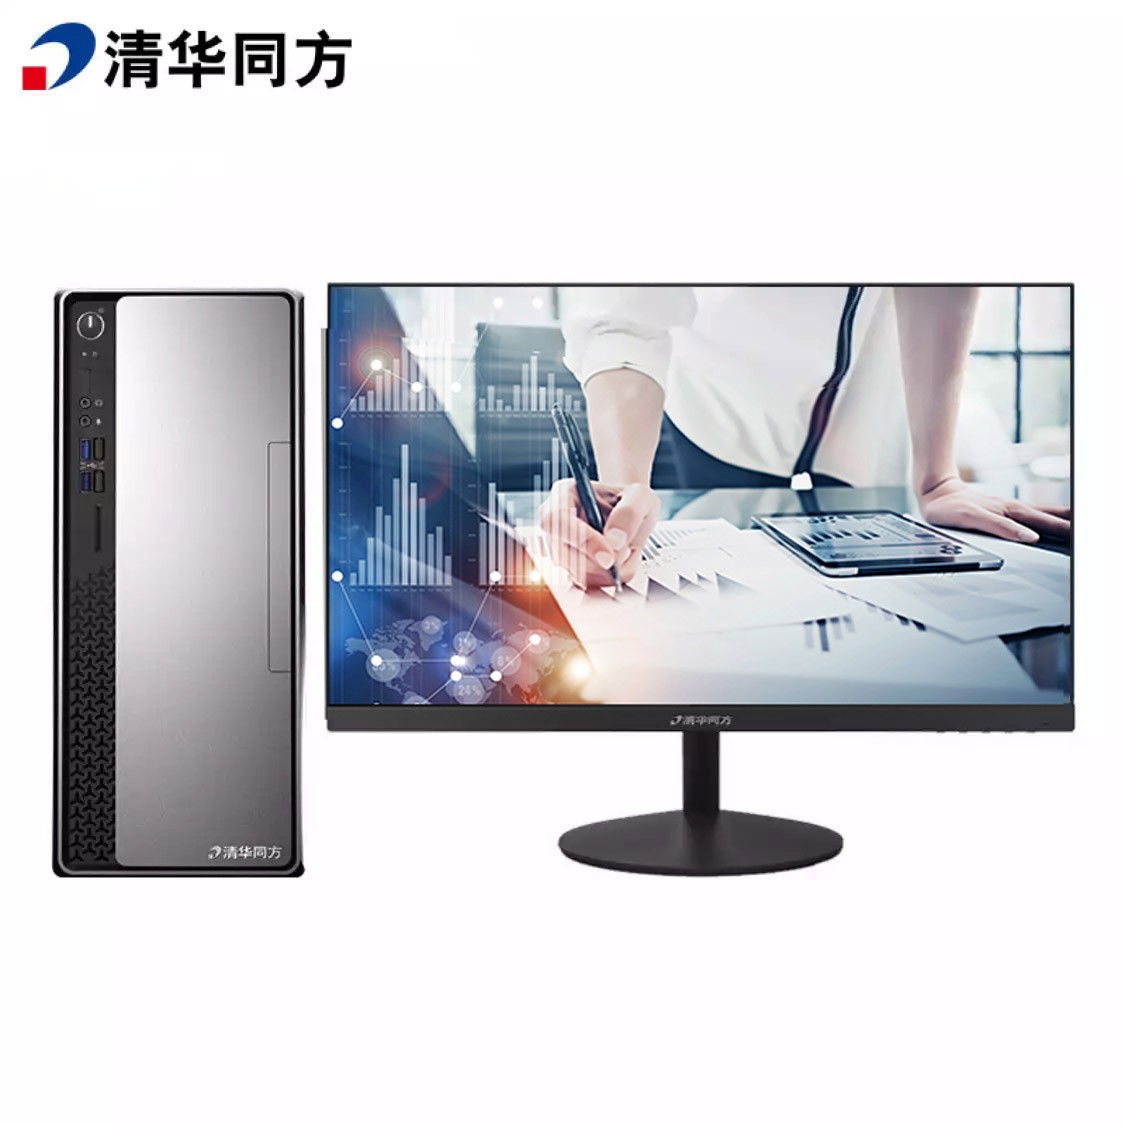 清华同方 超越E500-91084 21.5寸显示屏台式电脑